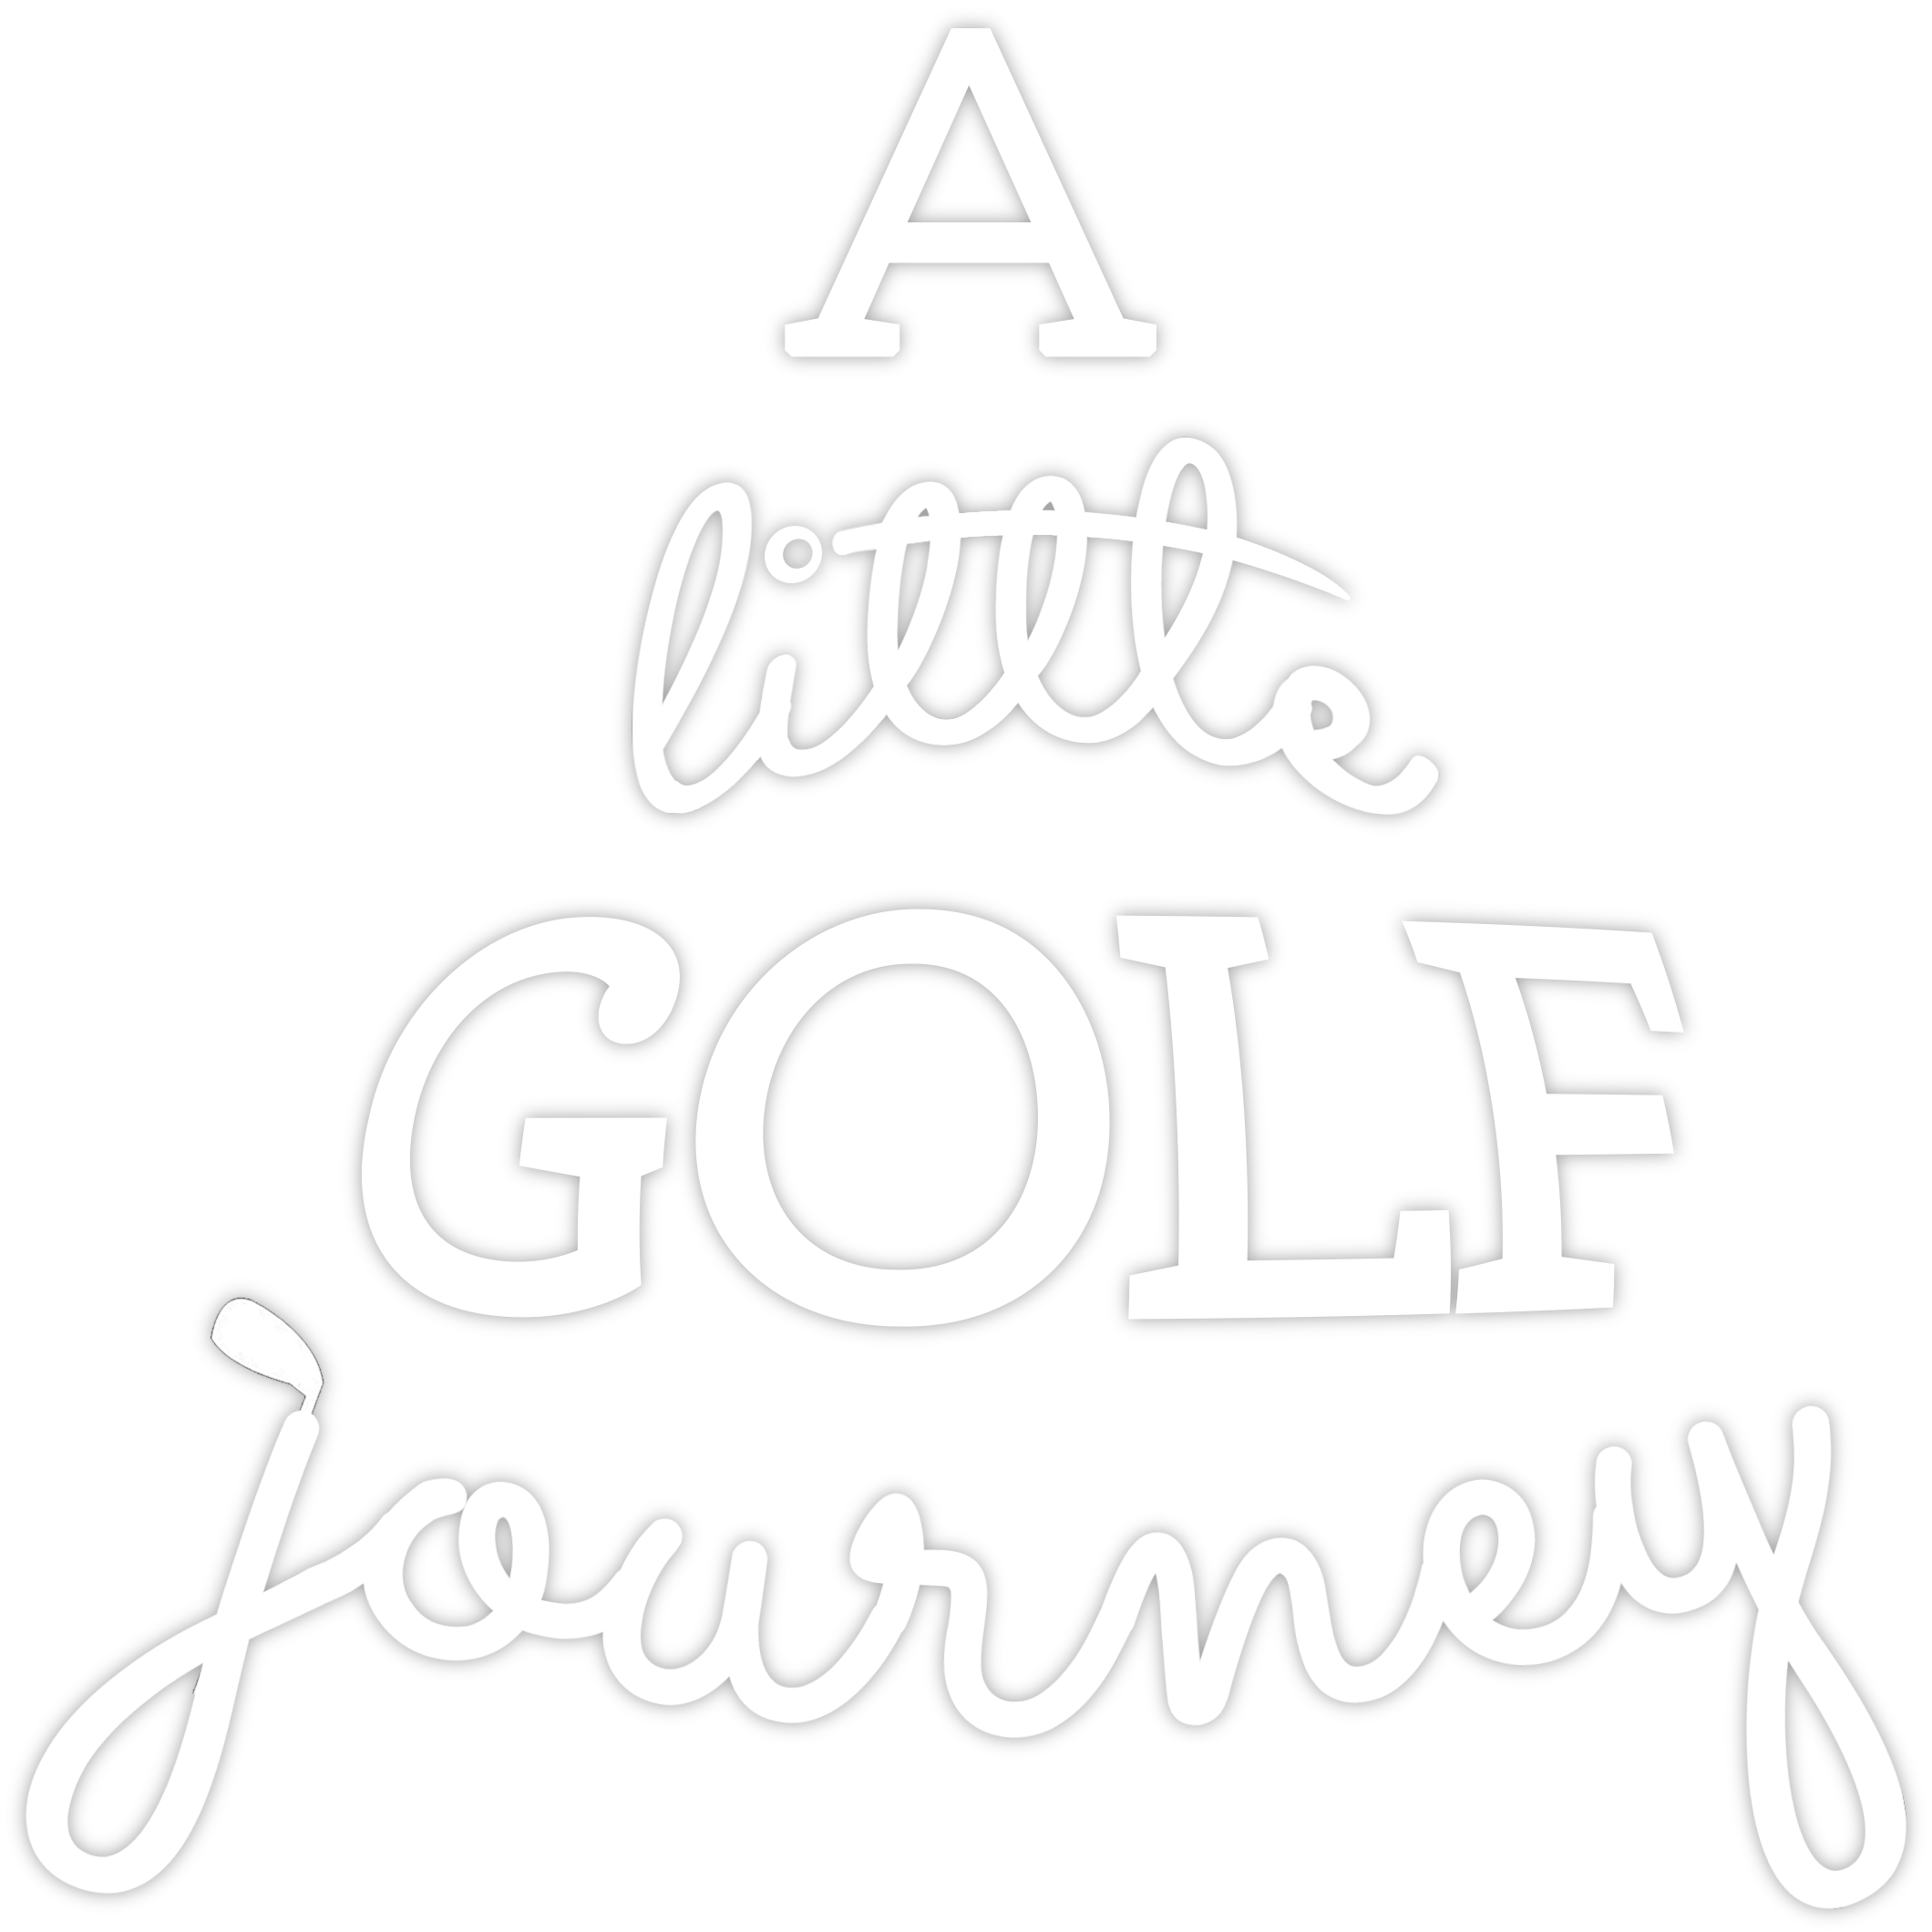 A Littel Golf Journey